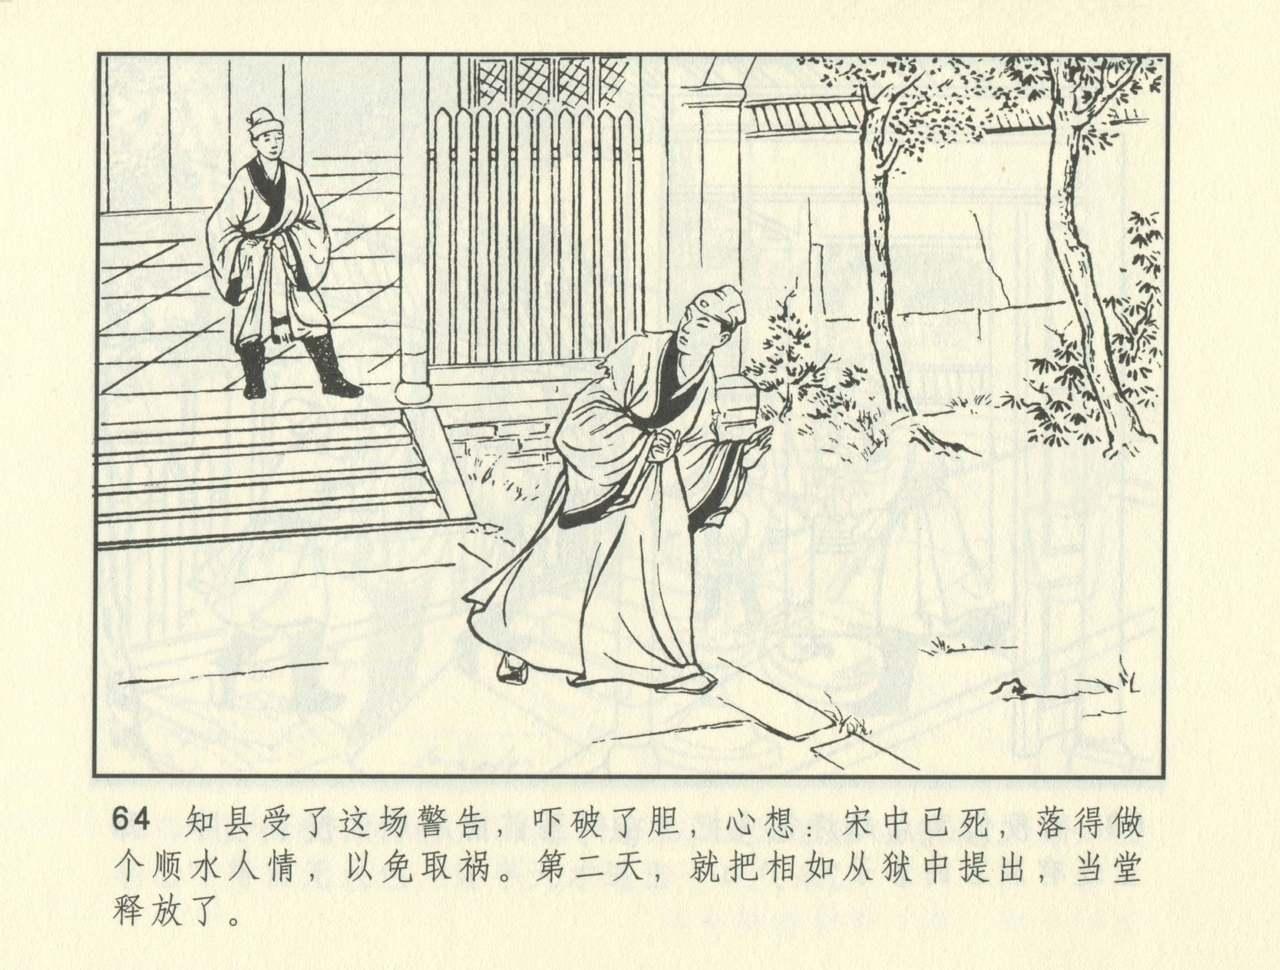 聊斋志异 张玮等绘 天津人民美术出版社 卷二十一 ~ 三十 404